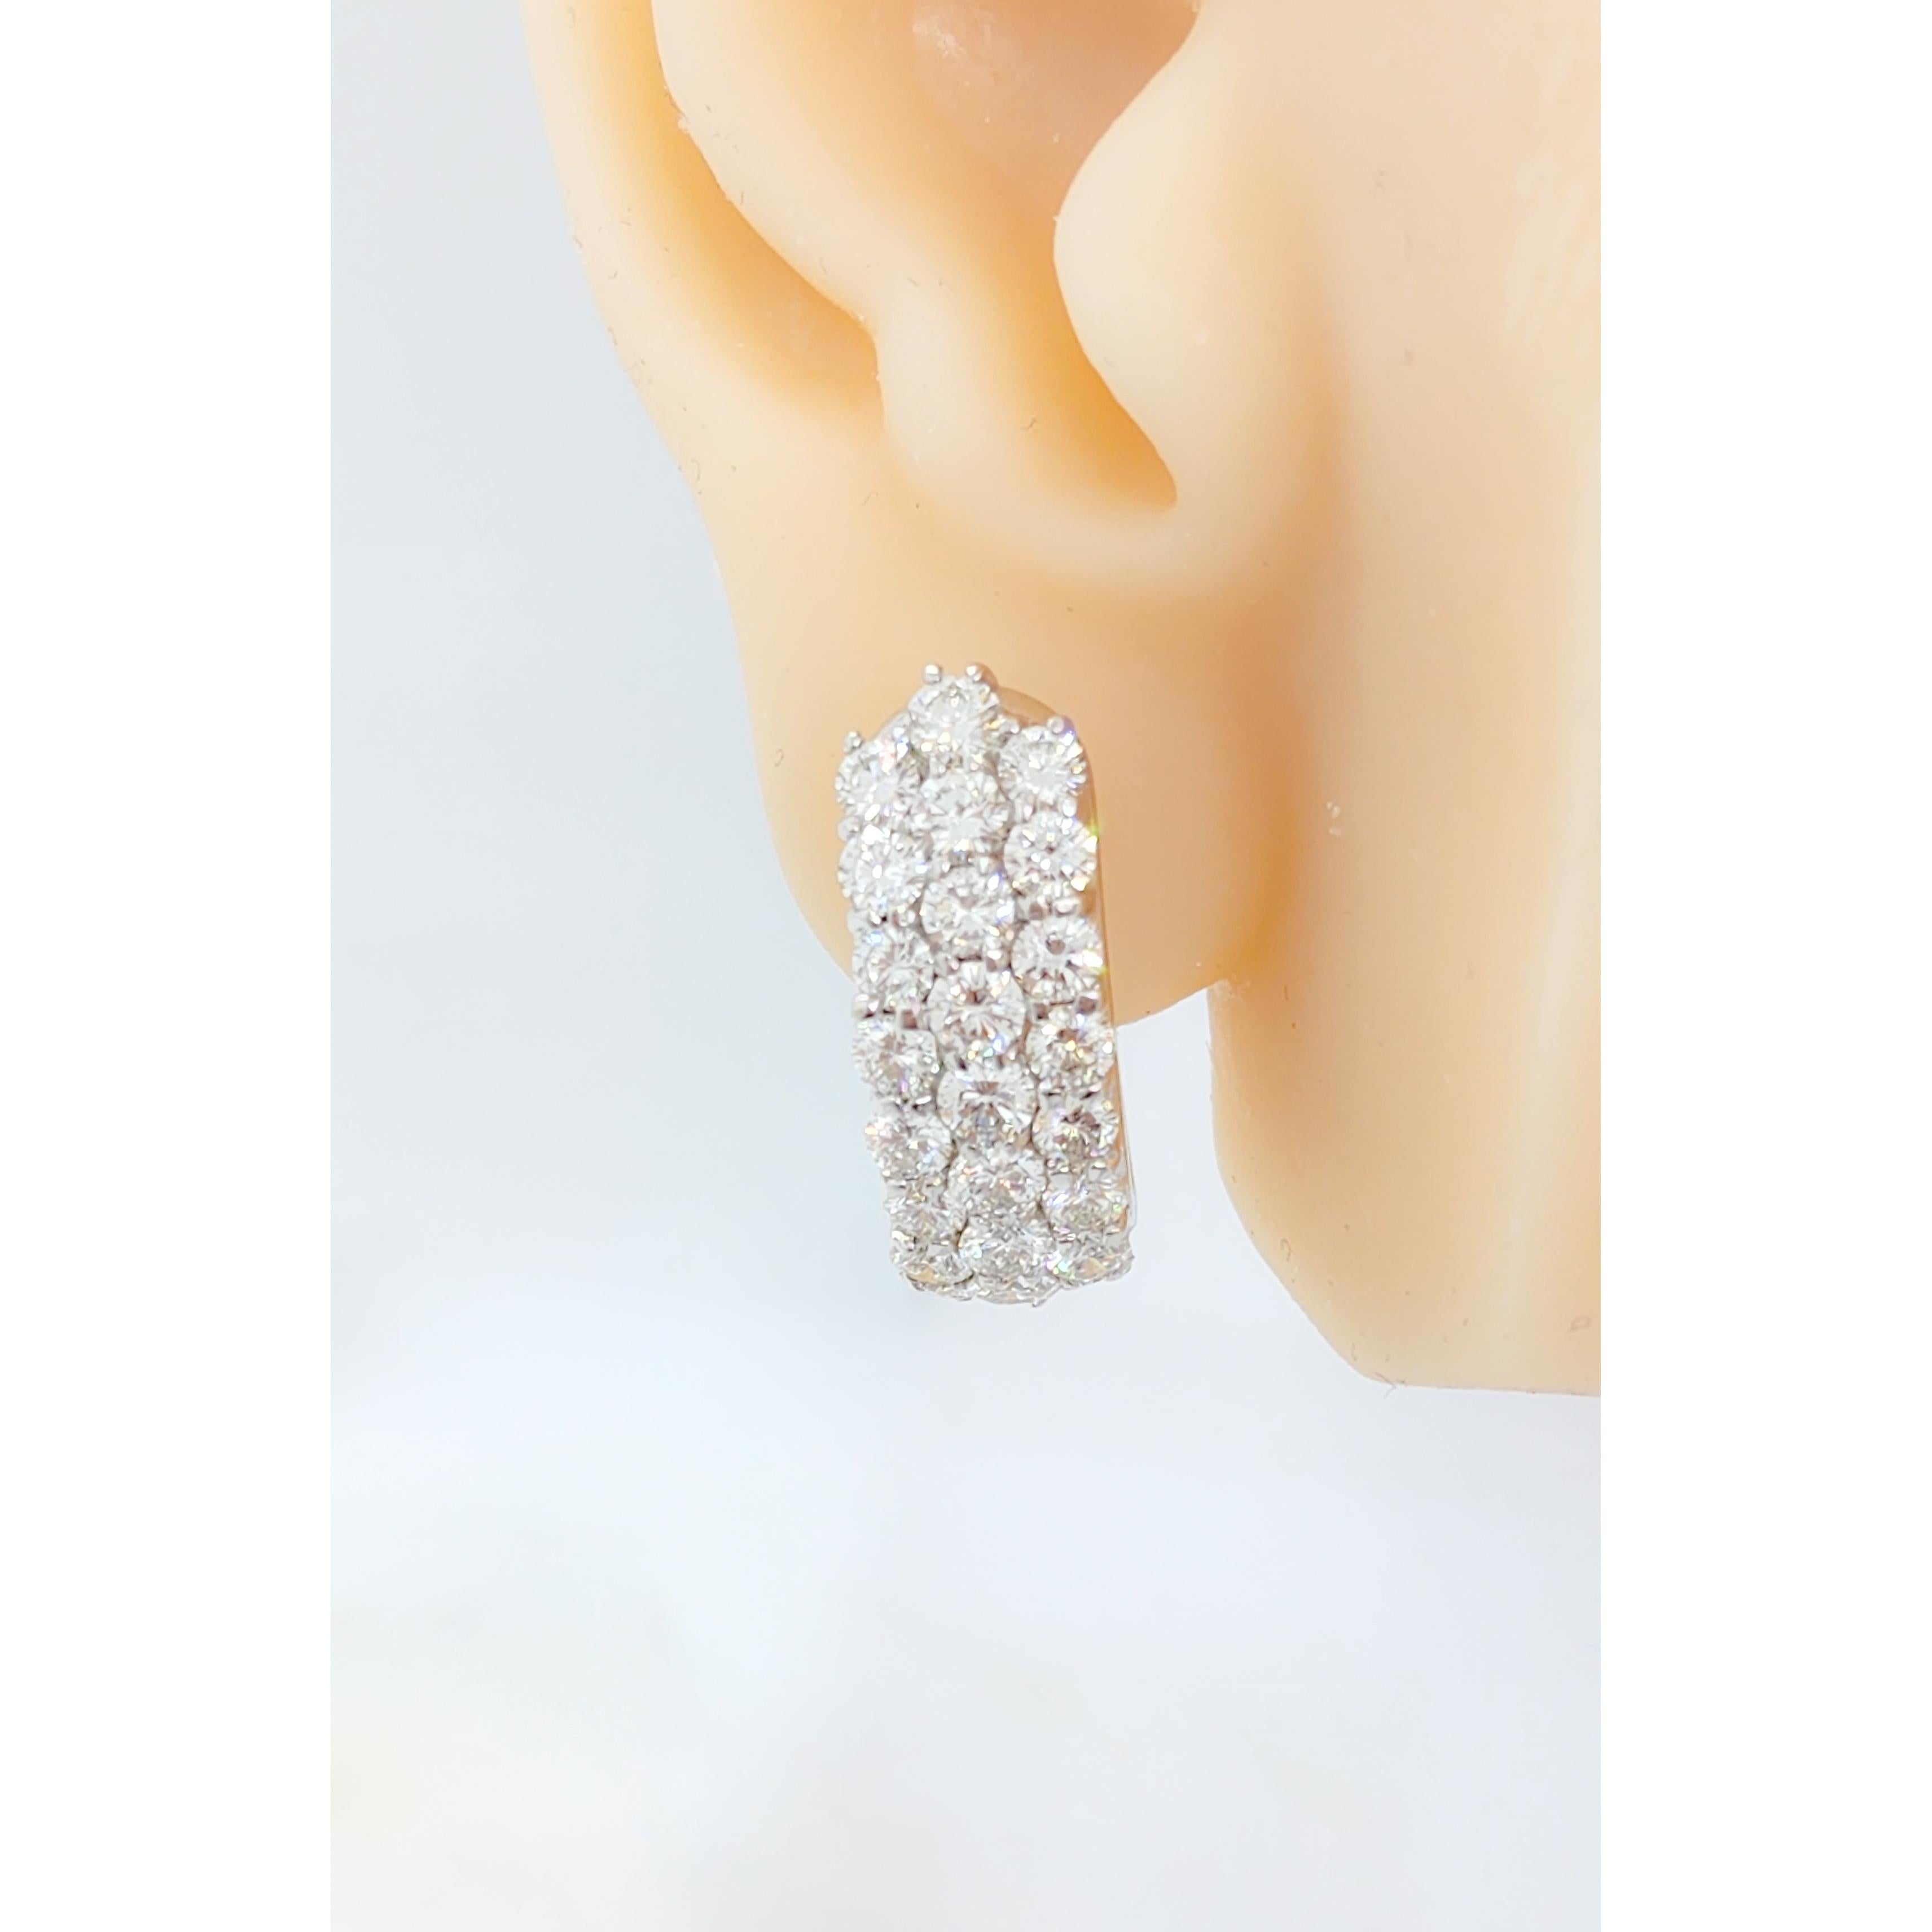 Wunderschöner weißer Diamantring mit 5.75 ct. weißen runden Diamanten von guter Qualität.  Handgefertigt aus 18k Weißgold.  